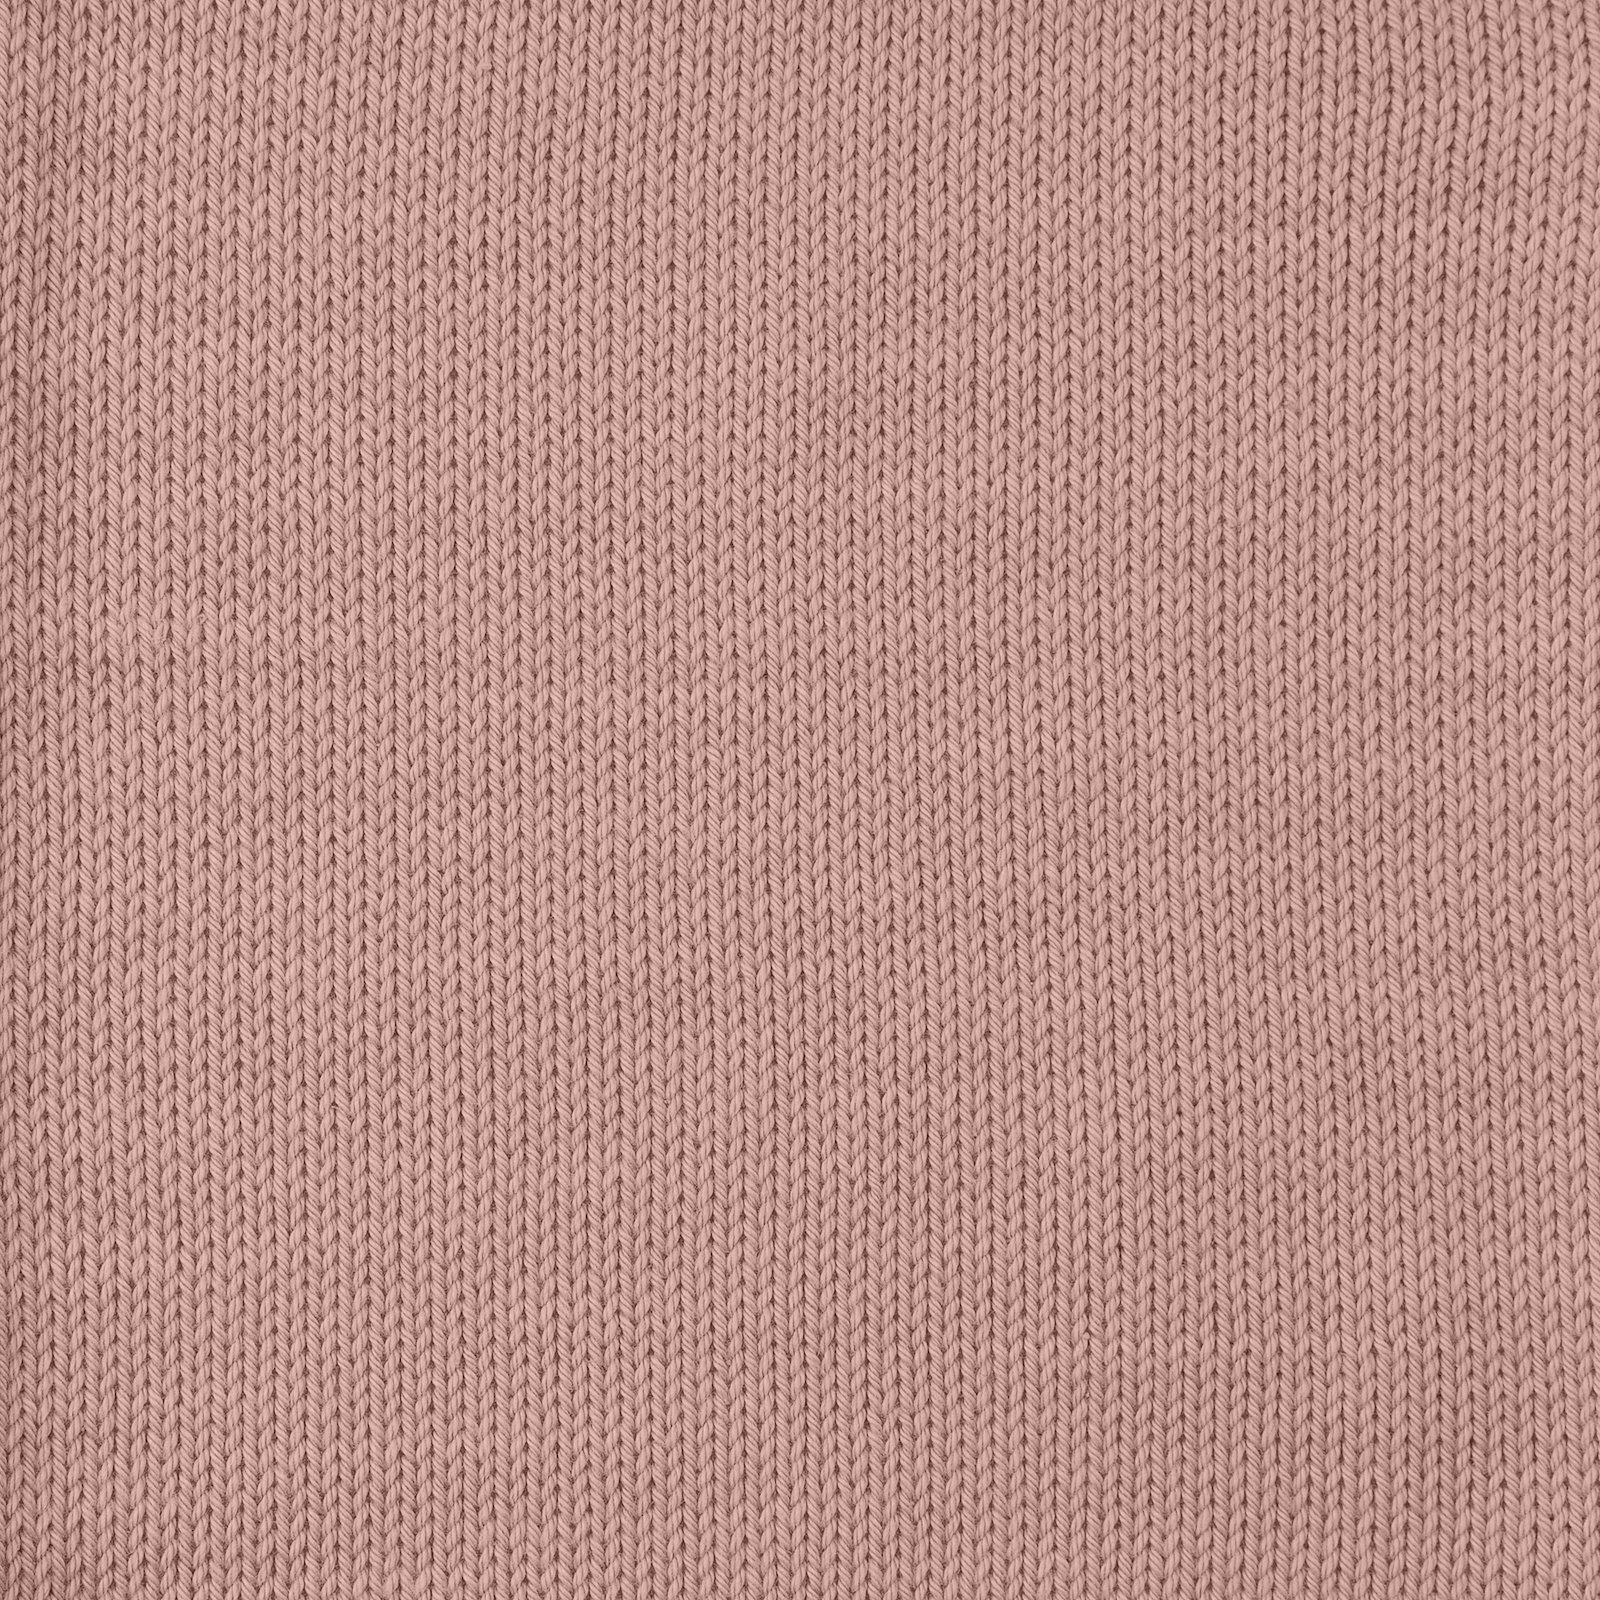 FRAYA, 100% cotton yarn "Colourful", old rose 90060008_sskit